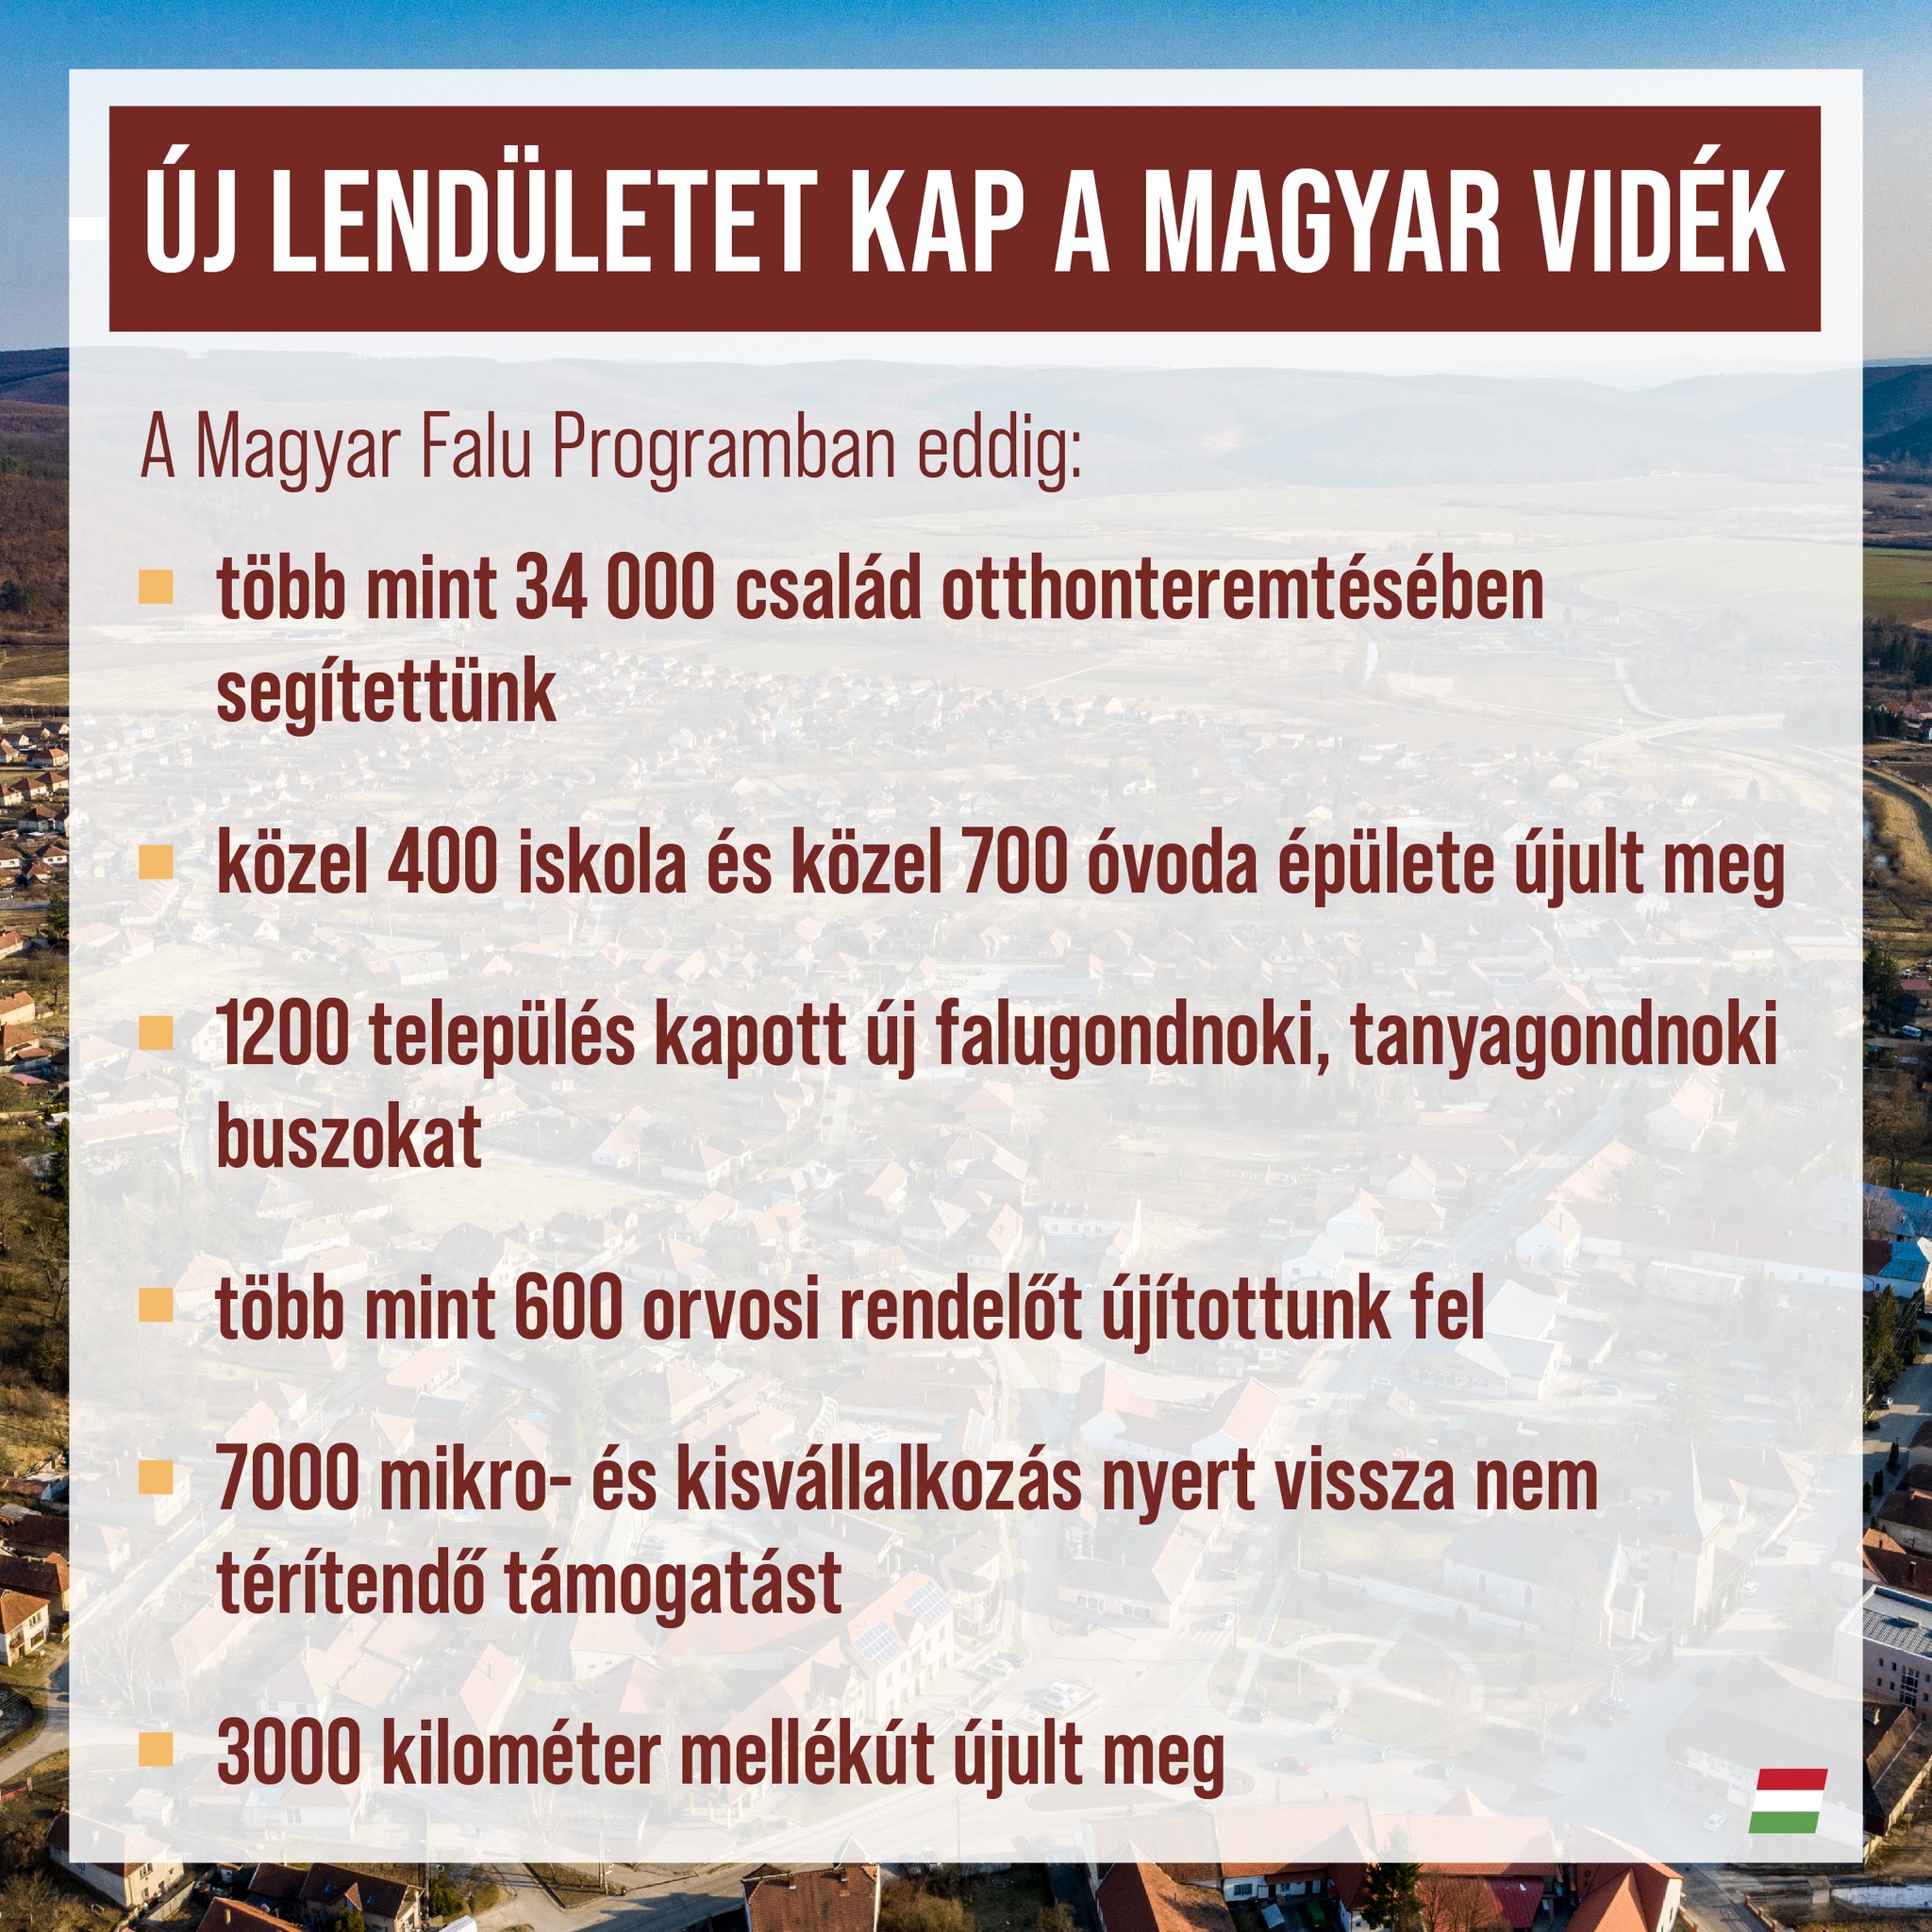 A Magyar Falu Program célja az 5000 fő alatti kistelepülések megerősítése és fejlesztése.